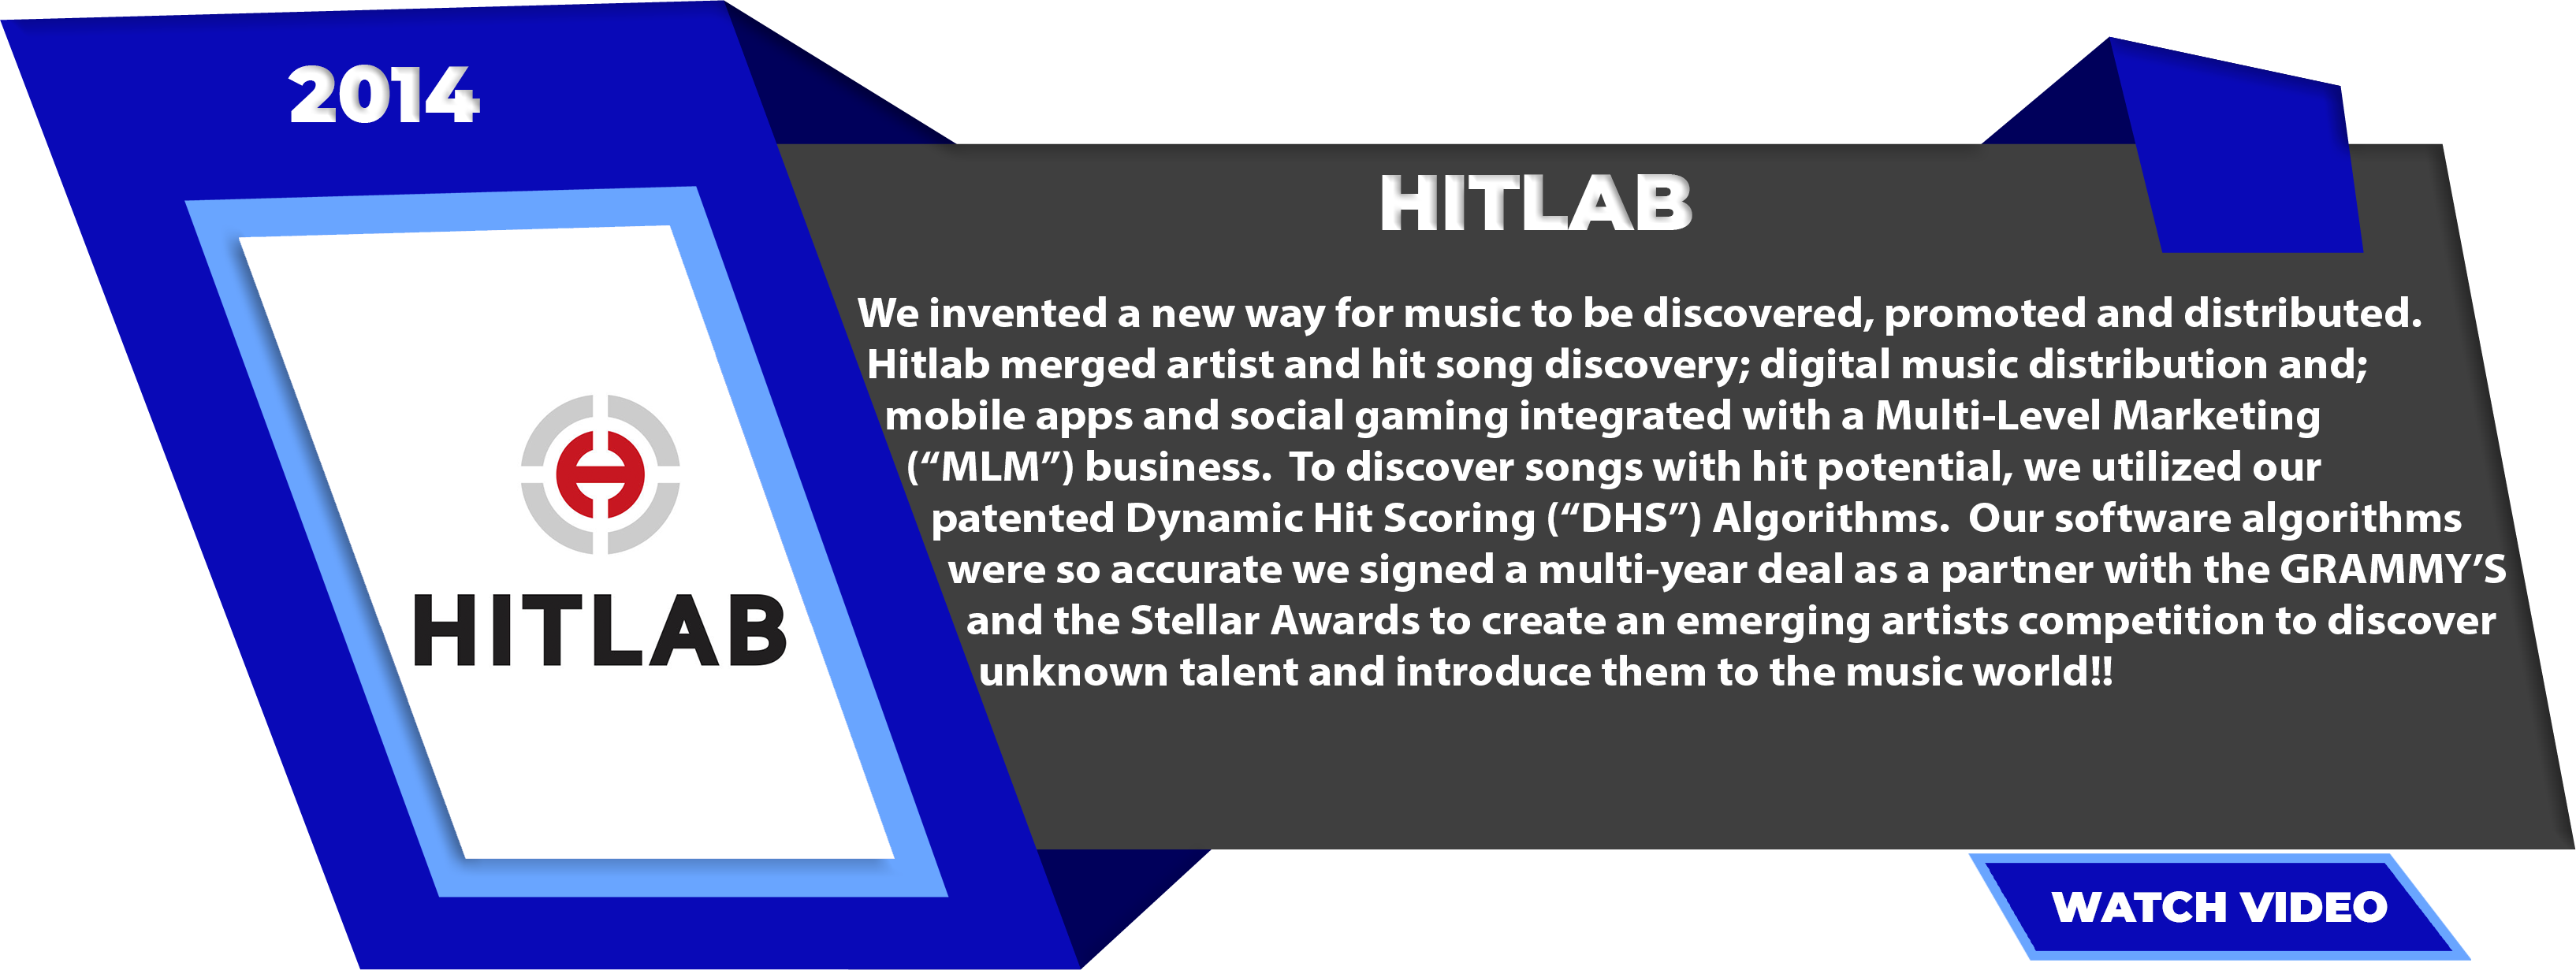 HitLab-2014-1